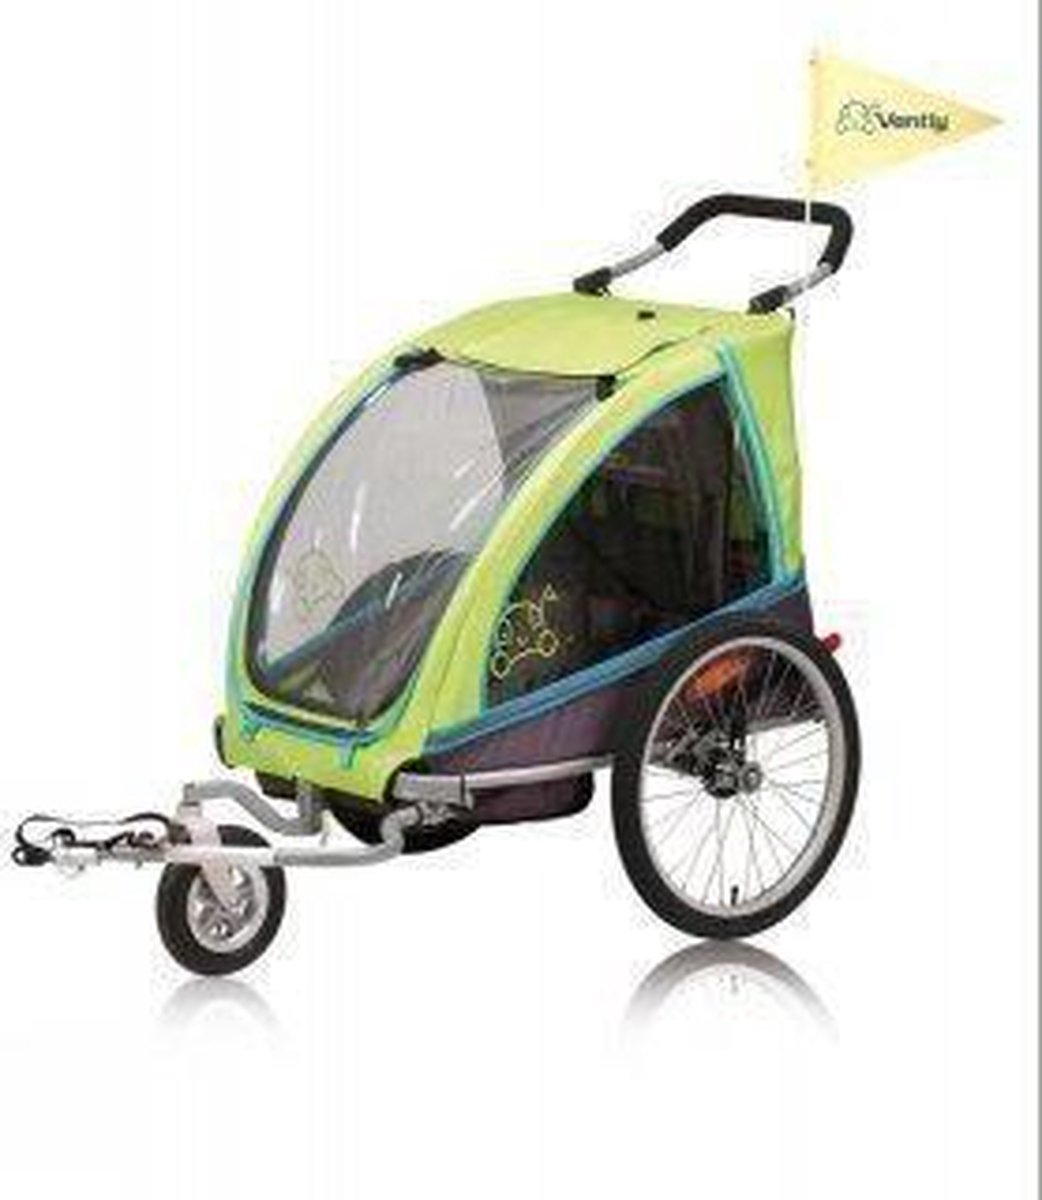 Vantly fietskar eco - kleur Lime groen met wandelset | bol.com